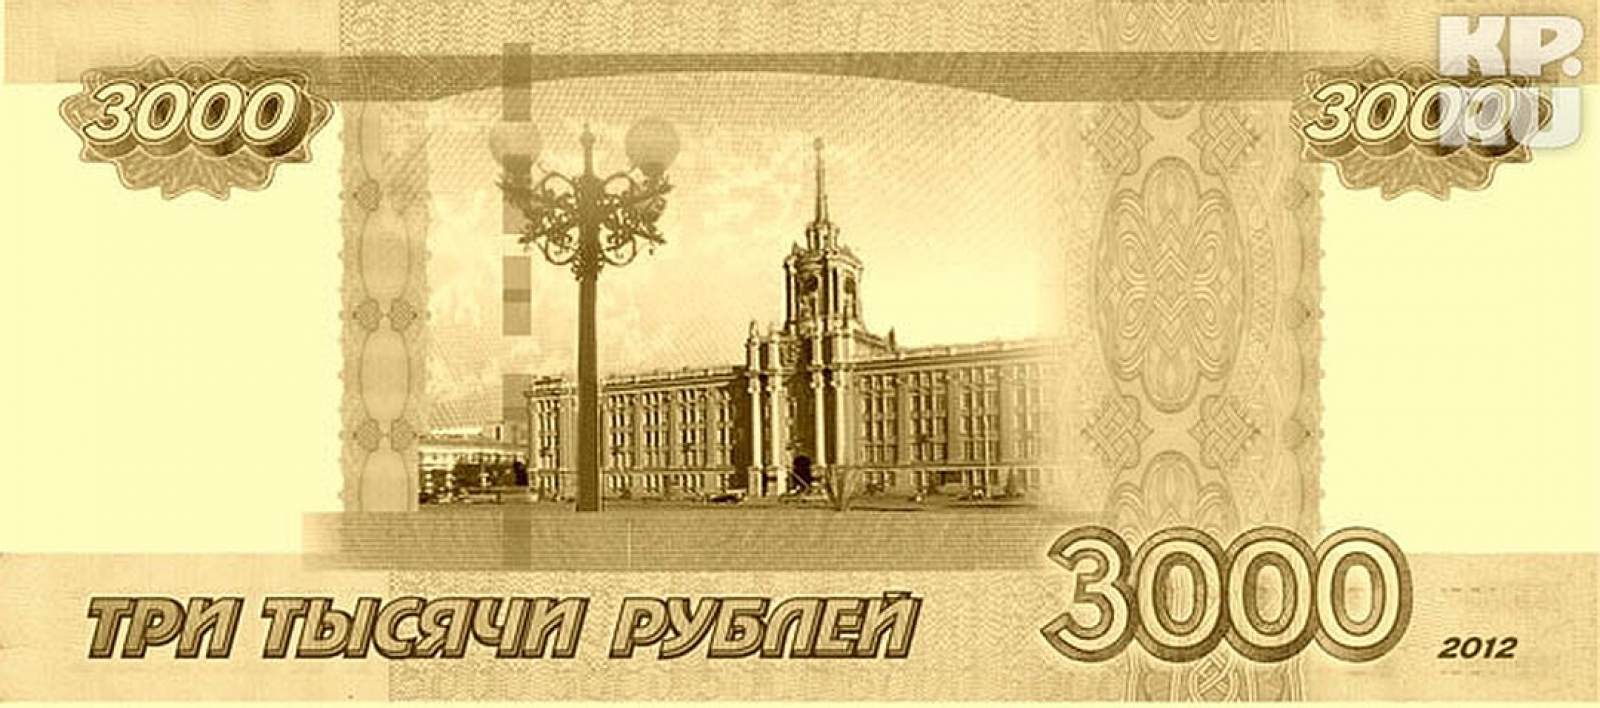 3000 российских рублей